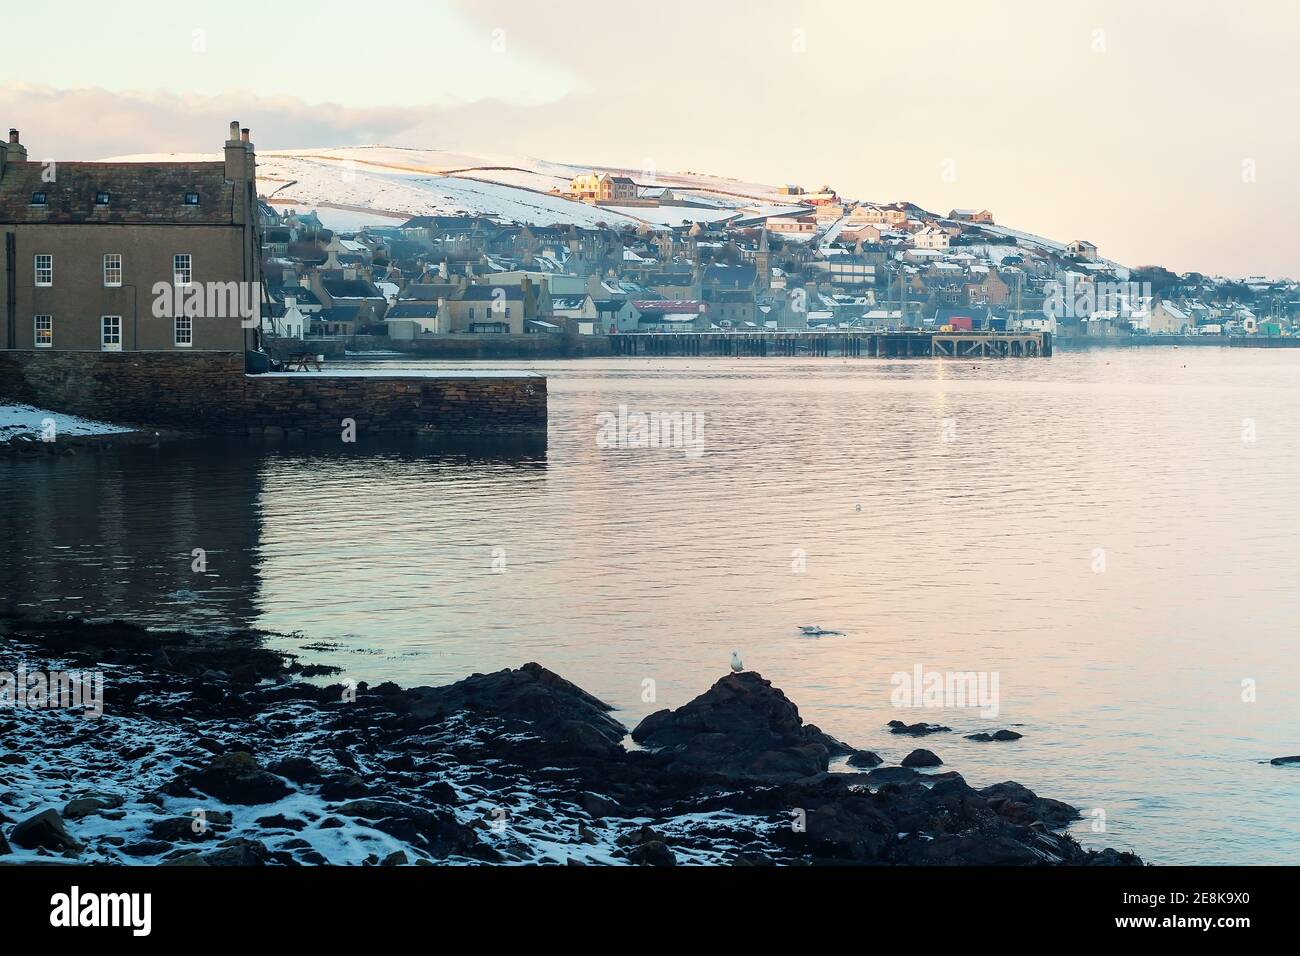 Vista frente al mar de la ciudad de pescadores Stromness en el norte de Escocia Islas Orkney con casas tradicionales construidas en piedra y muelles privados en la niebla de invierno Foto de stock